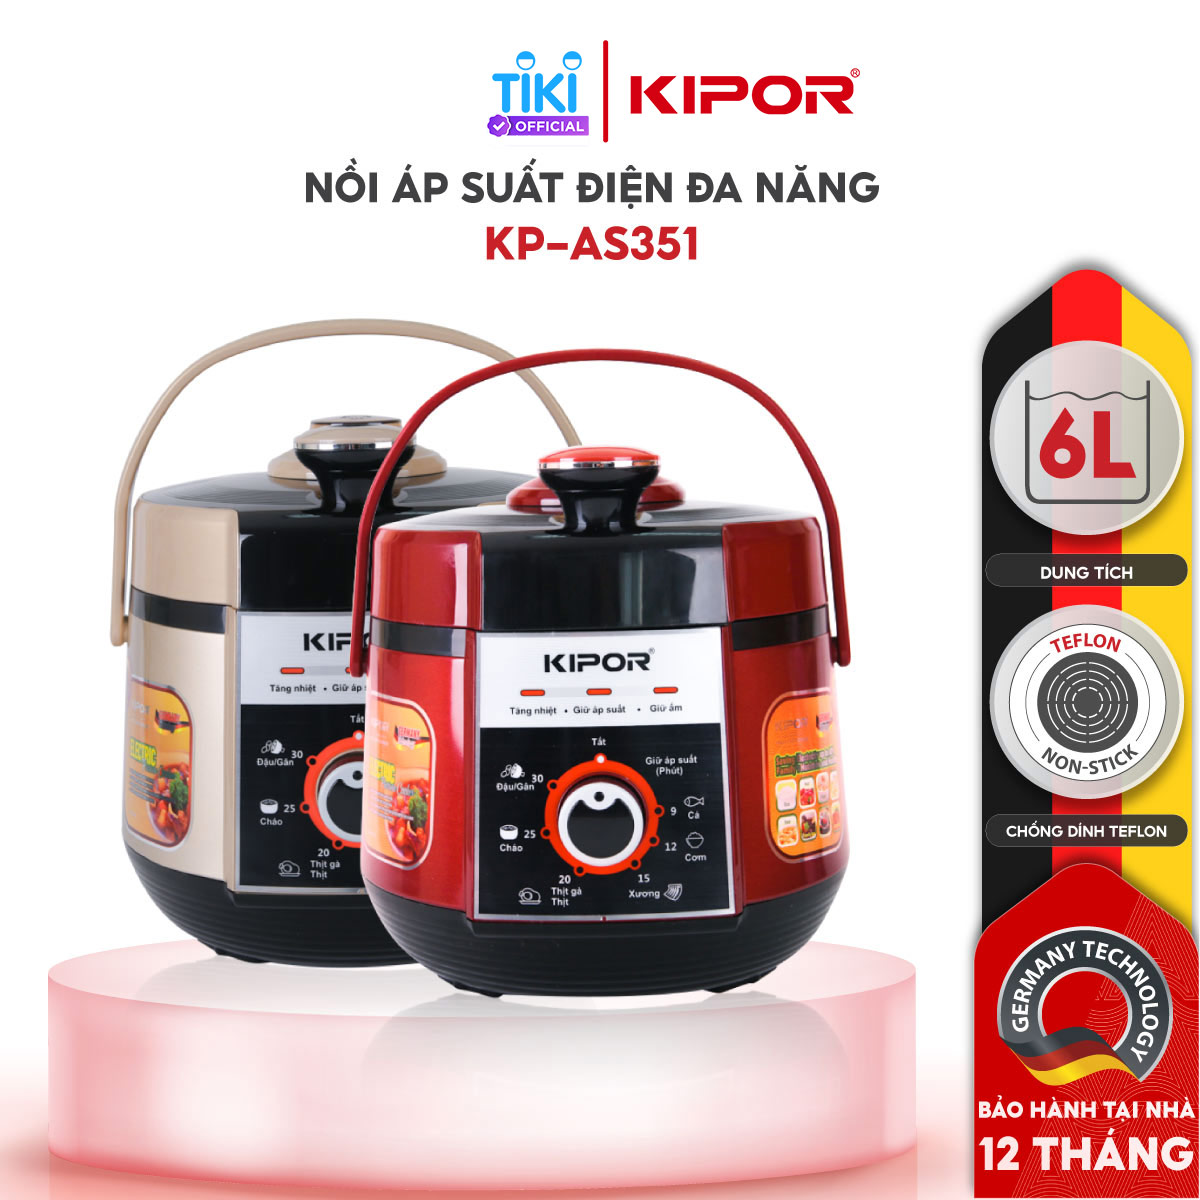 Nồi áp suất điện KIPOR KP-AS351 - 6L - Điều khiển cơ đa chức năng 7 trong 1 - Lòng nồi 5 lớp chống dính TEFLON - Hàng chính hãng